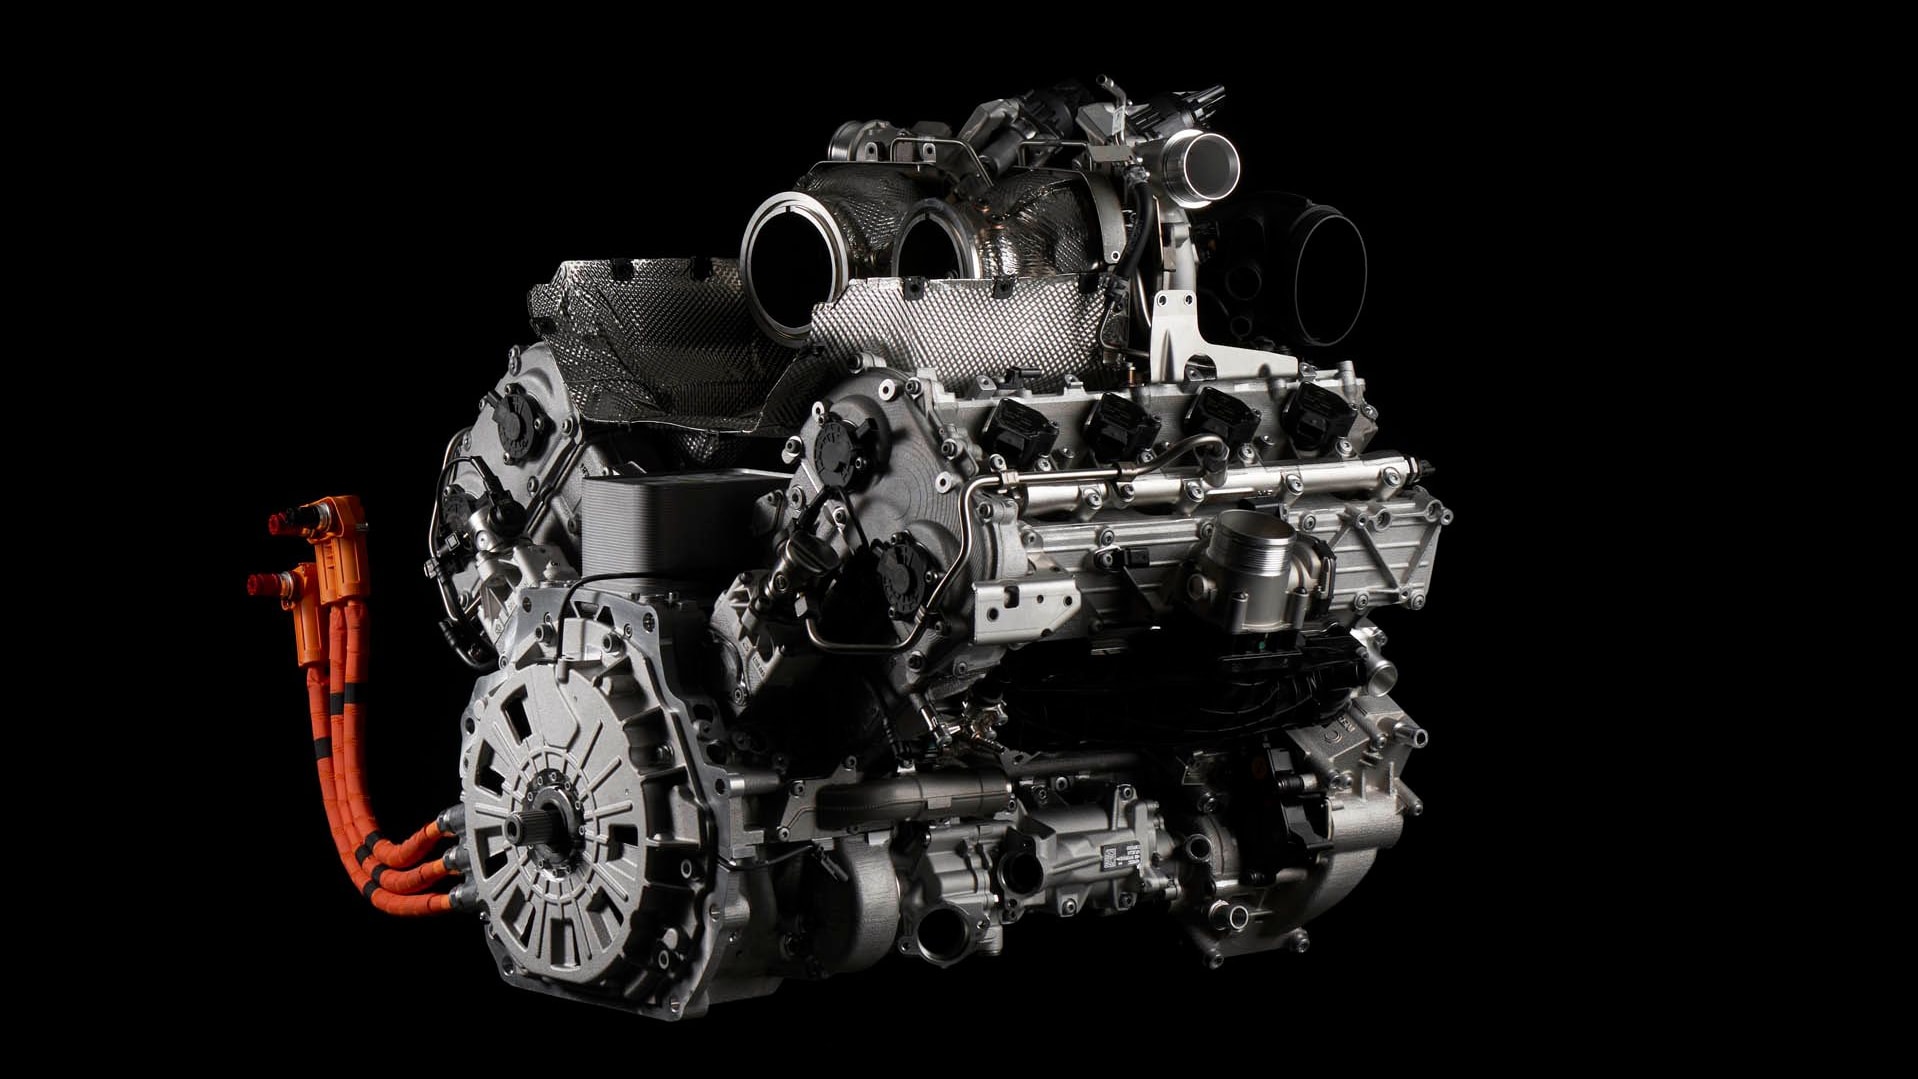 Lamborghini Huracán successor's twin-turbocharged 4.0-liter V-8